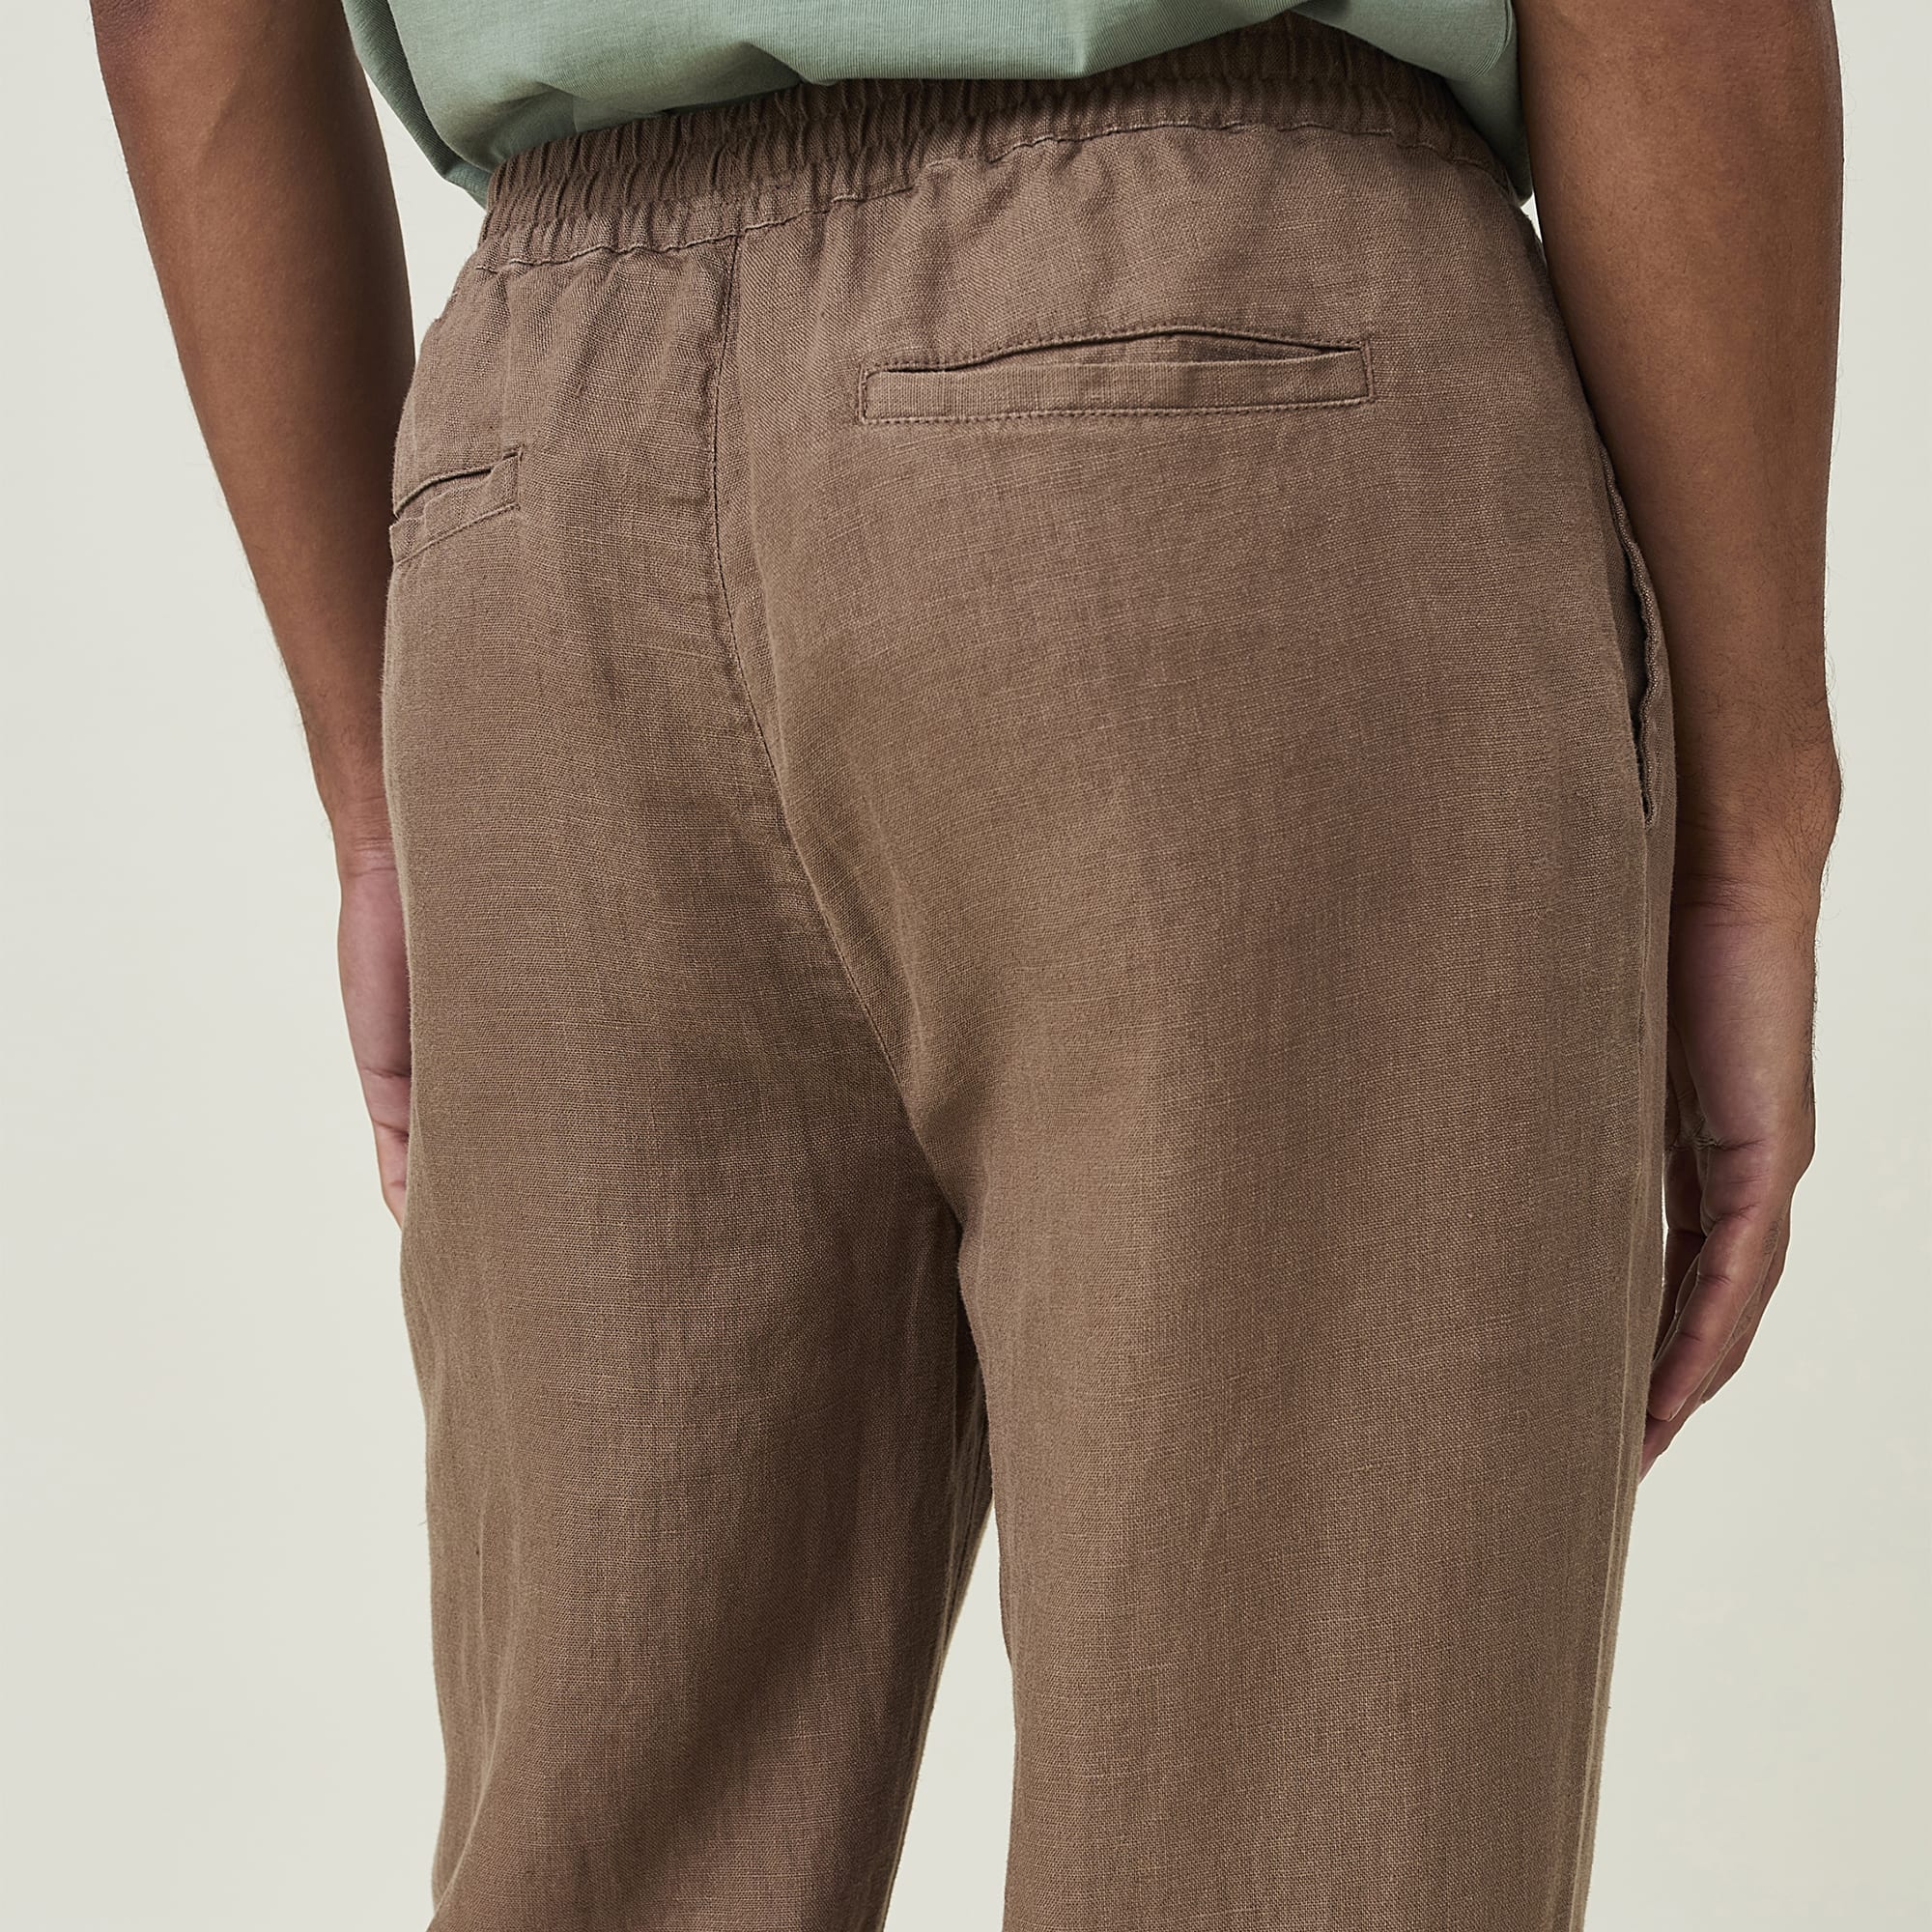 Hugh Linen Pants, light brown